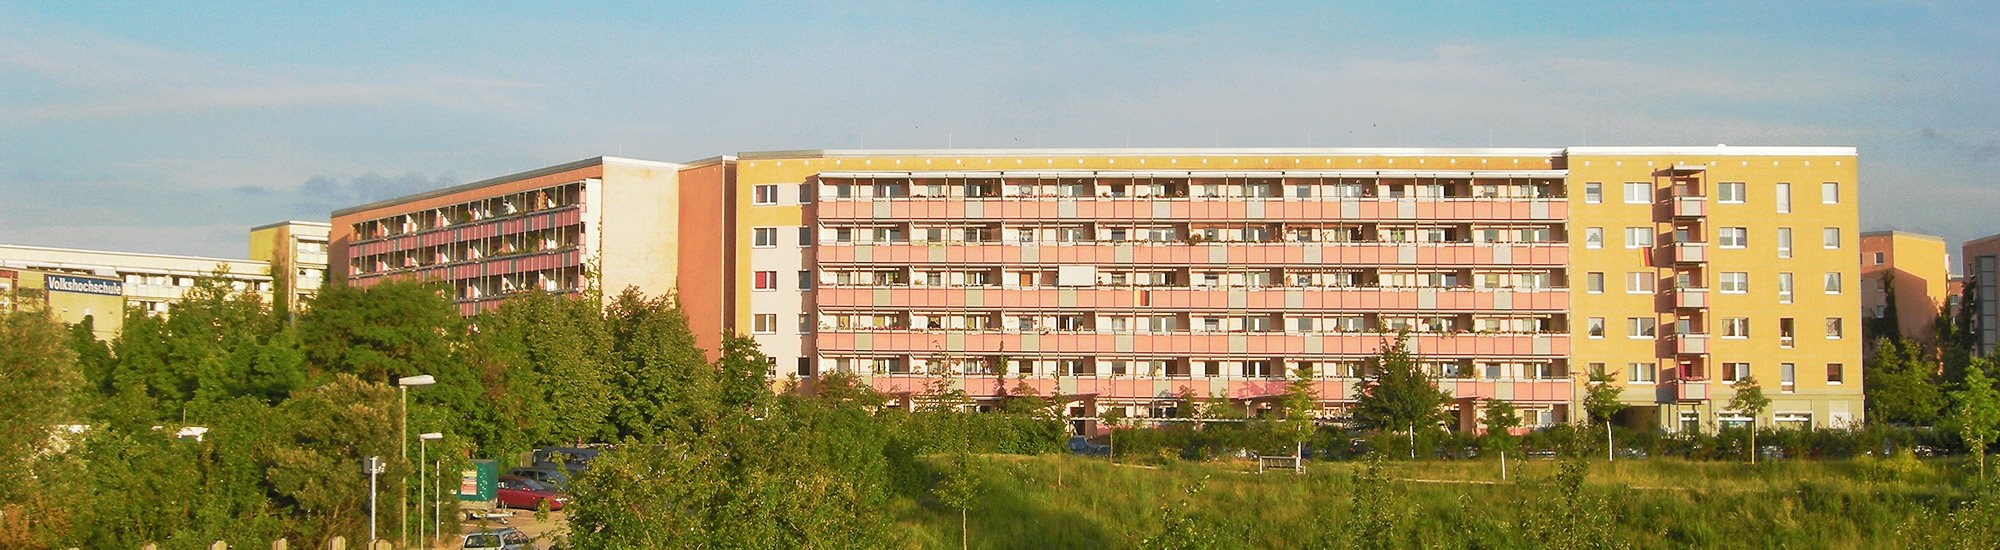 Immobilien Hellersdorf